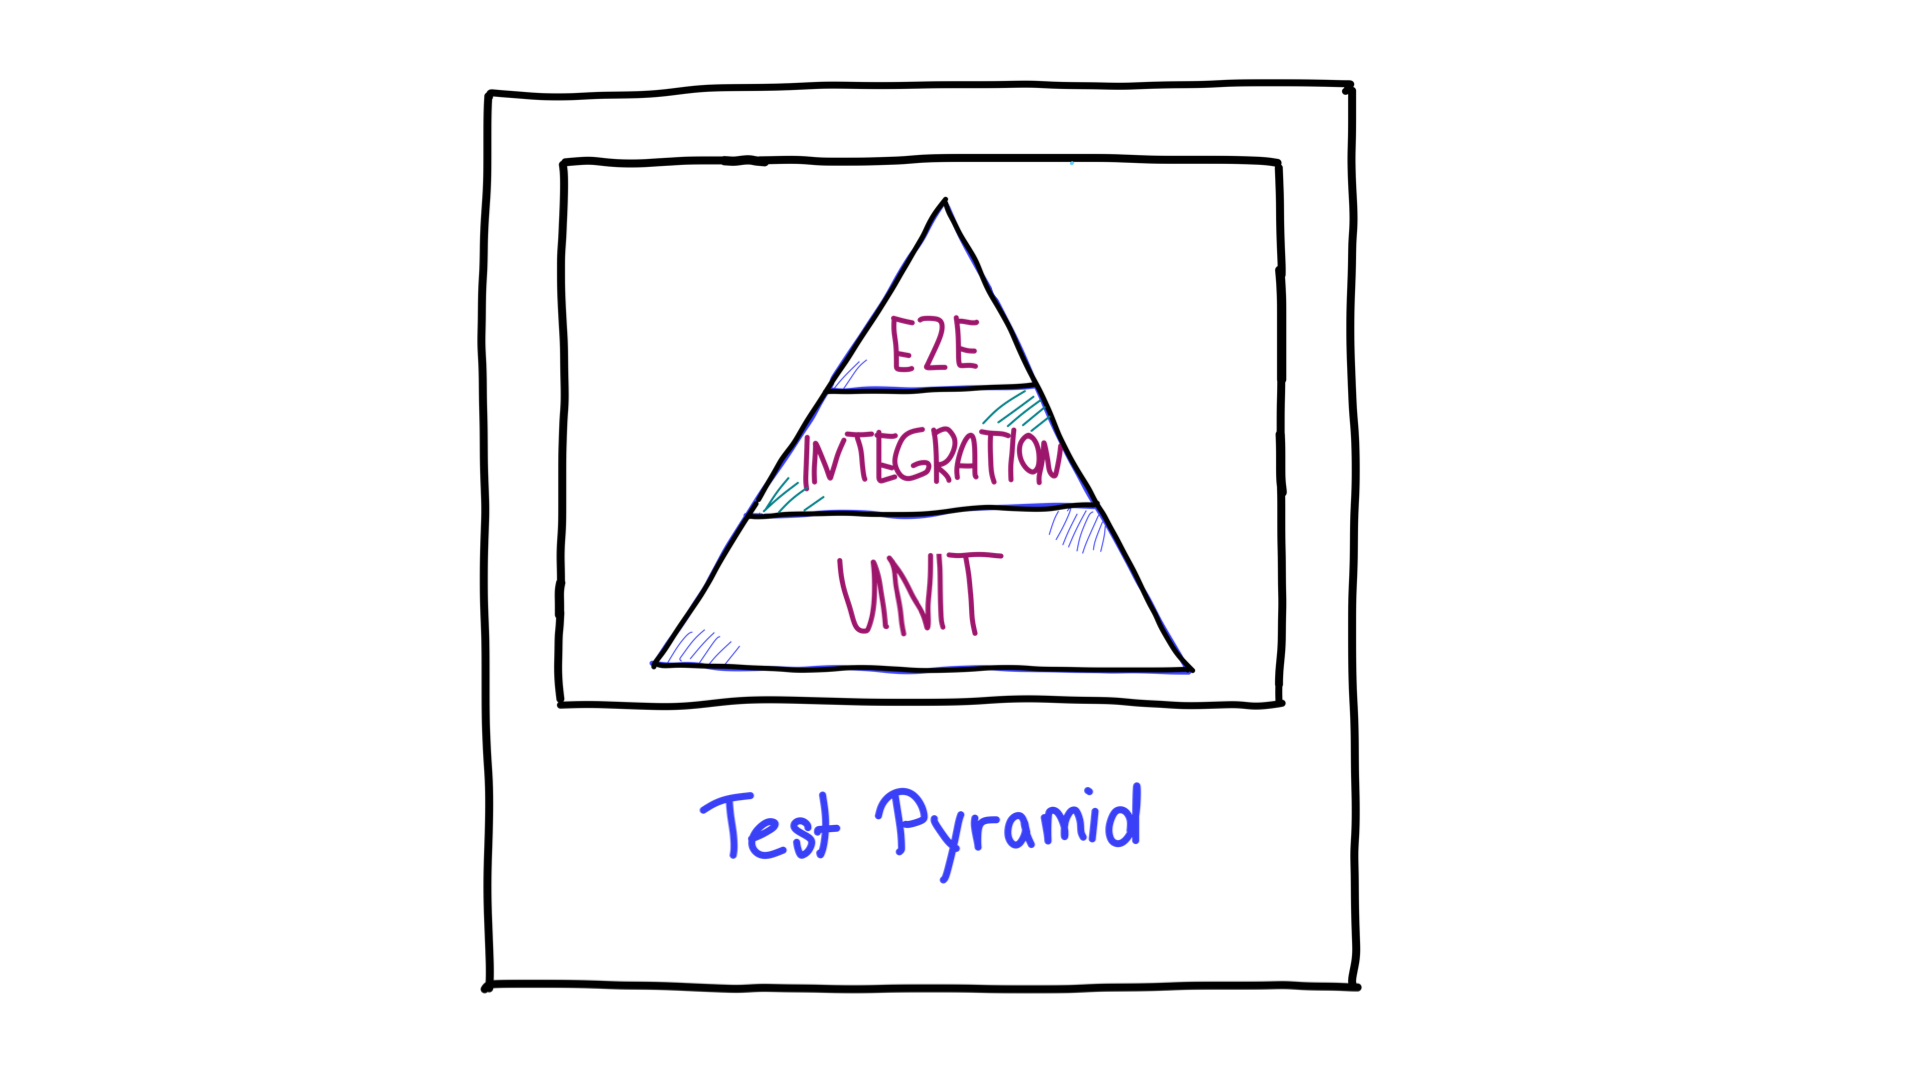 La piramide di prova.